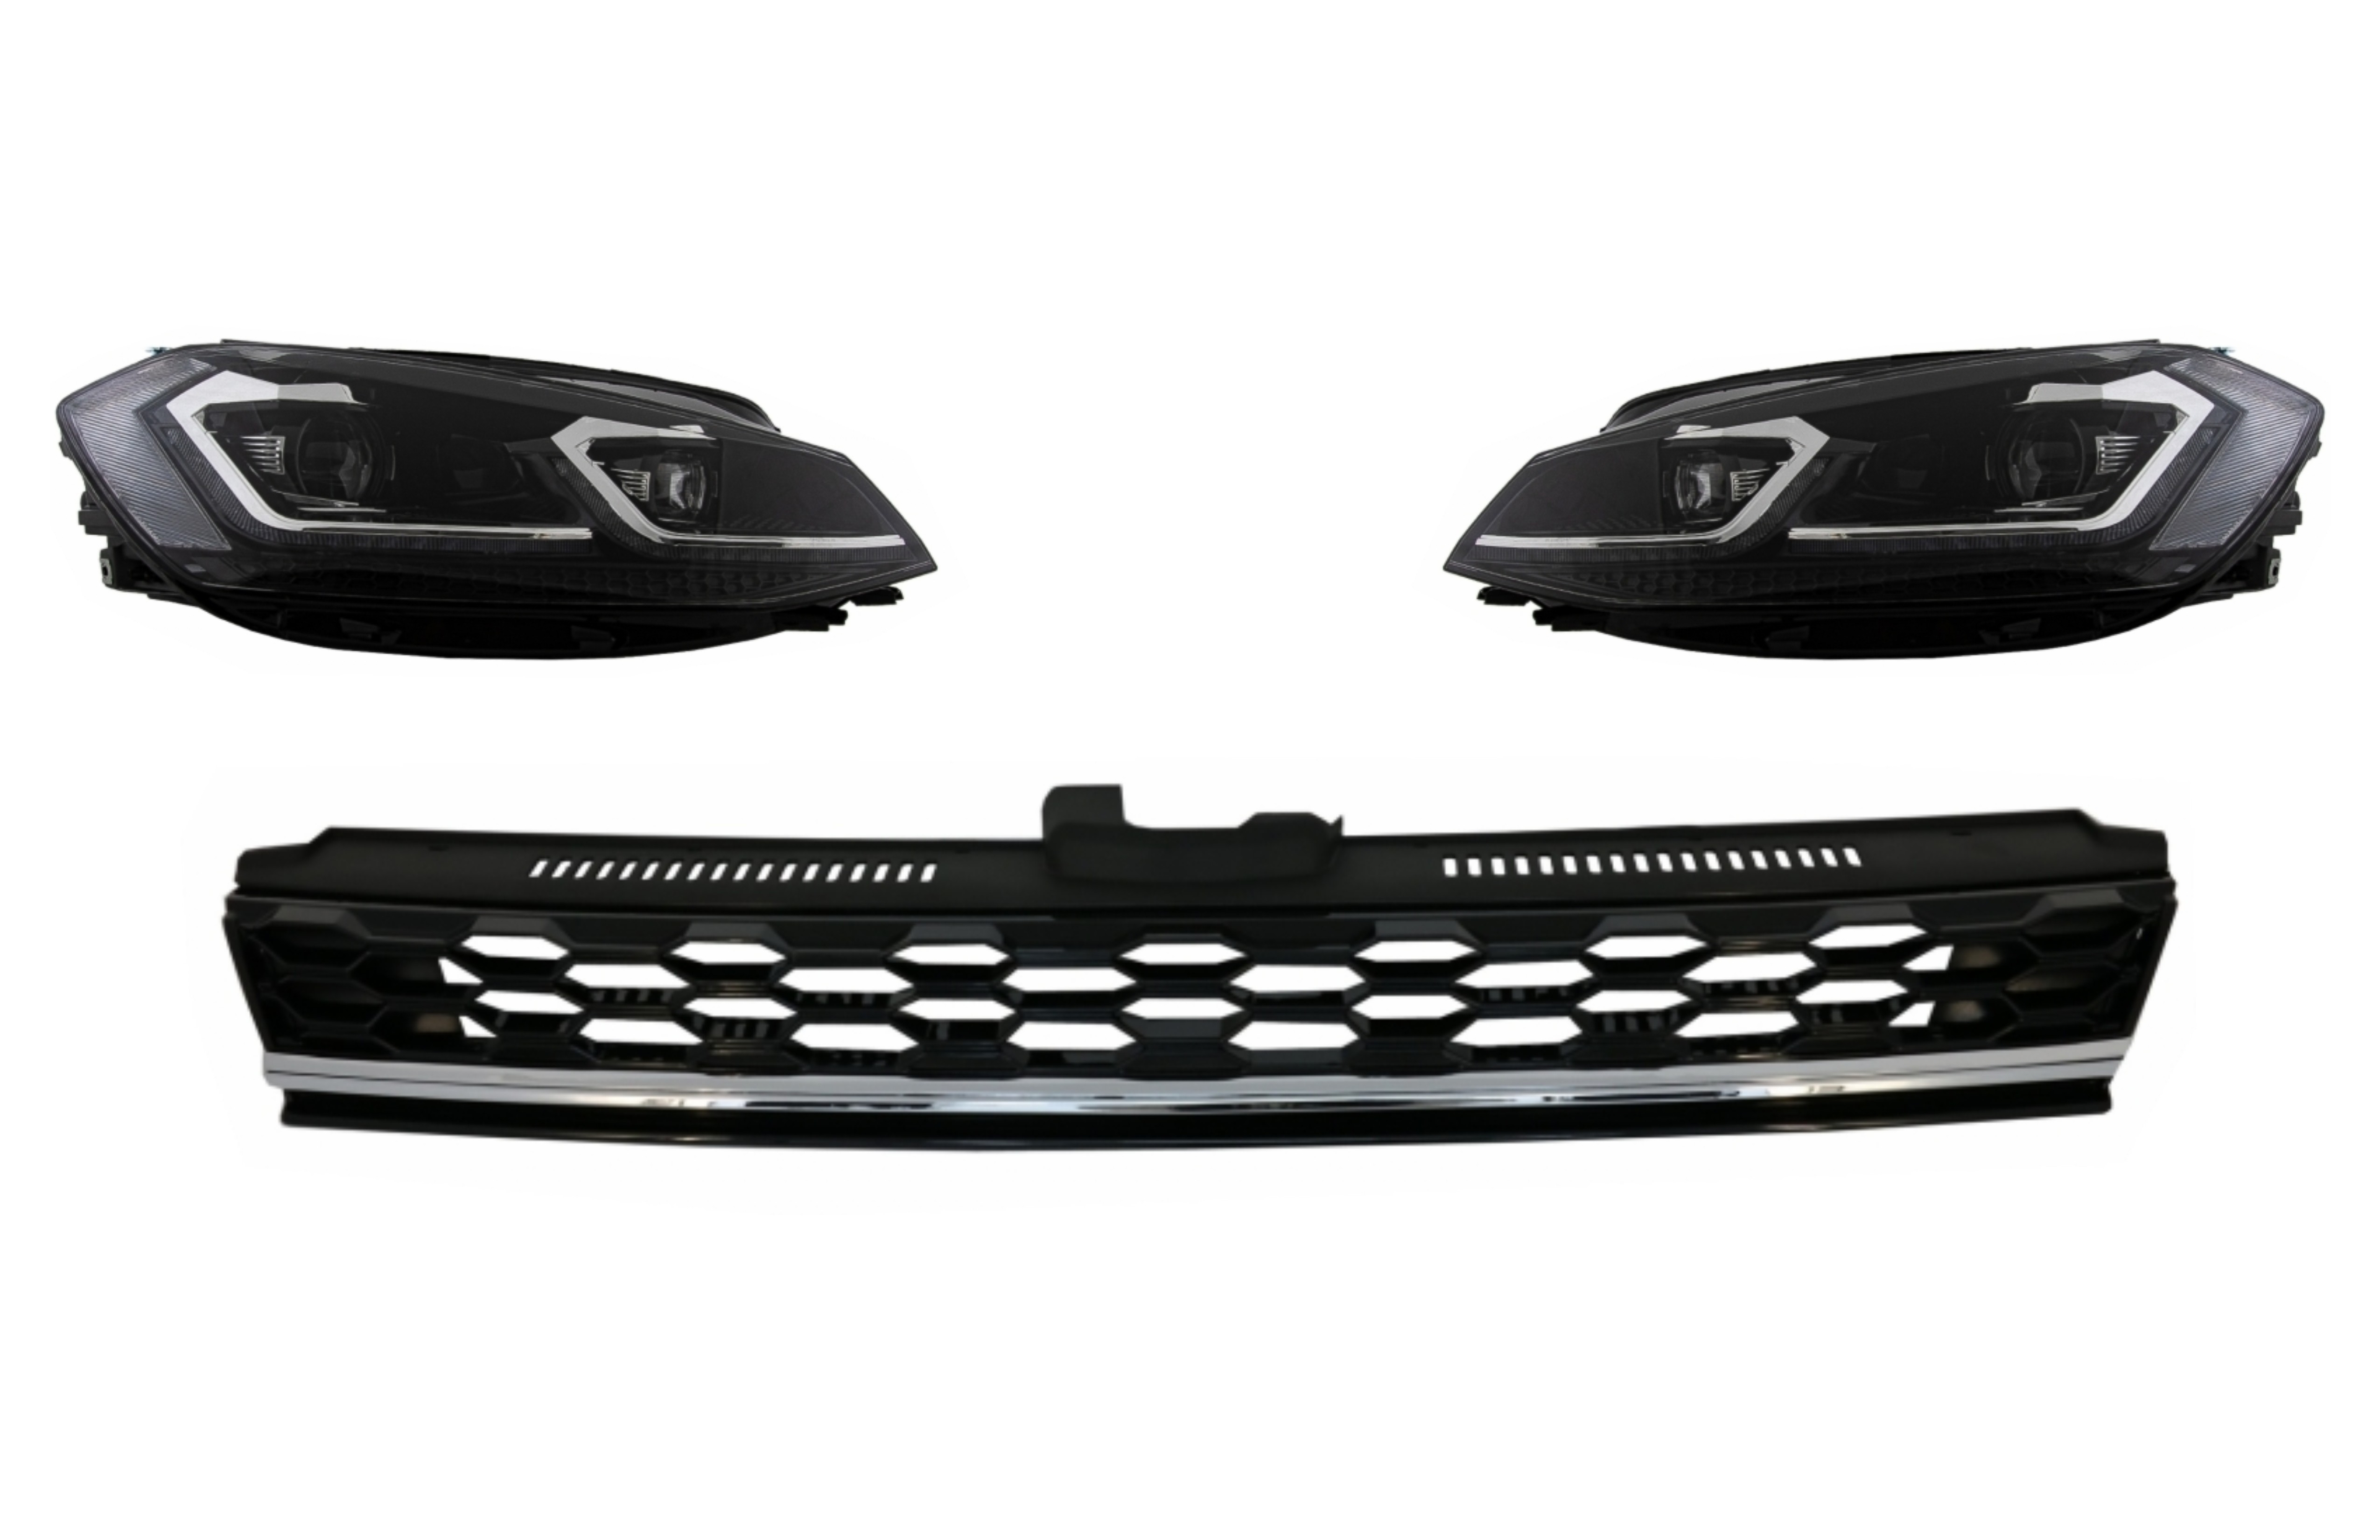 Központi jelvény nélküli hűtőrács LED-es fényszórókkal Bi-Xenon szekvenciális dinamikus kanyarodó lámpák VW Golf 7.5 Facelifthez (2017-től) GTI Design Chrome